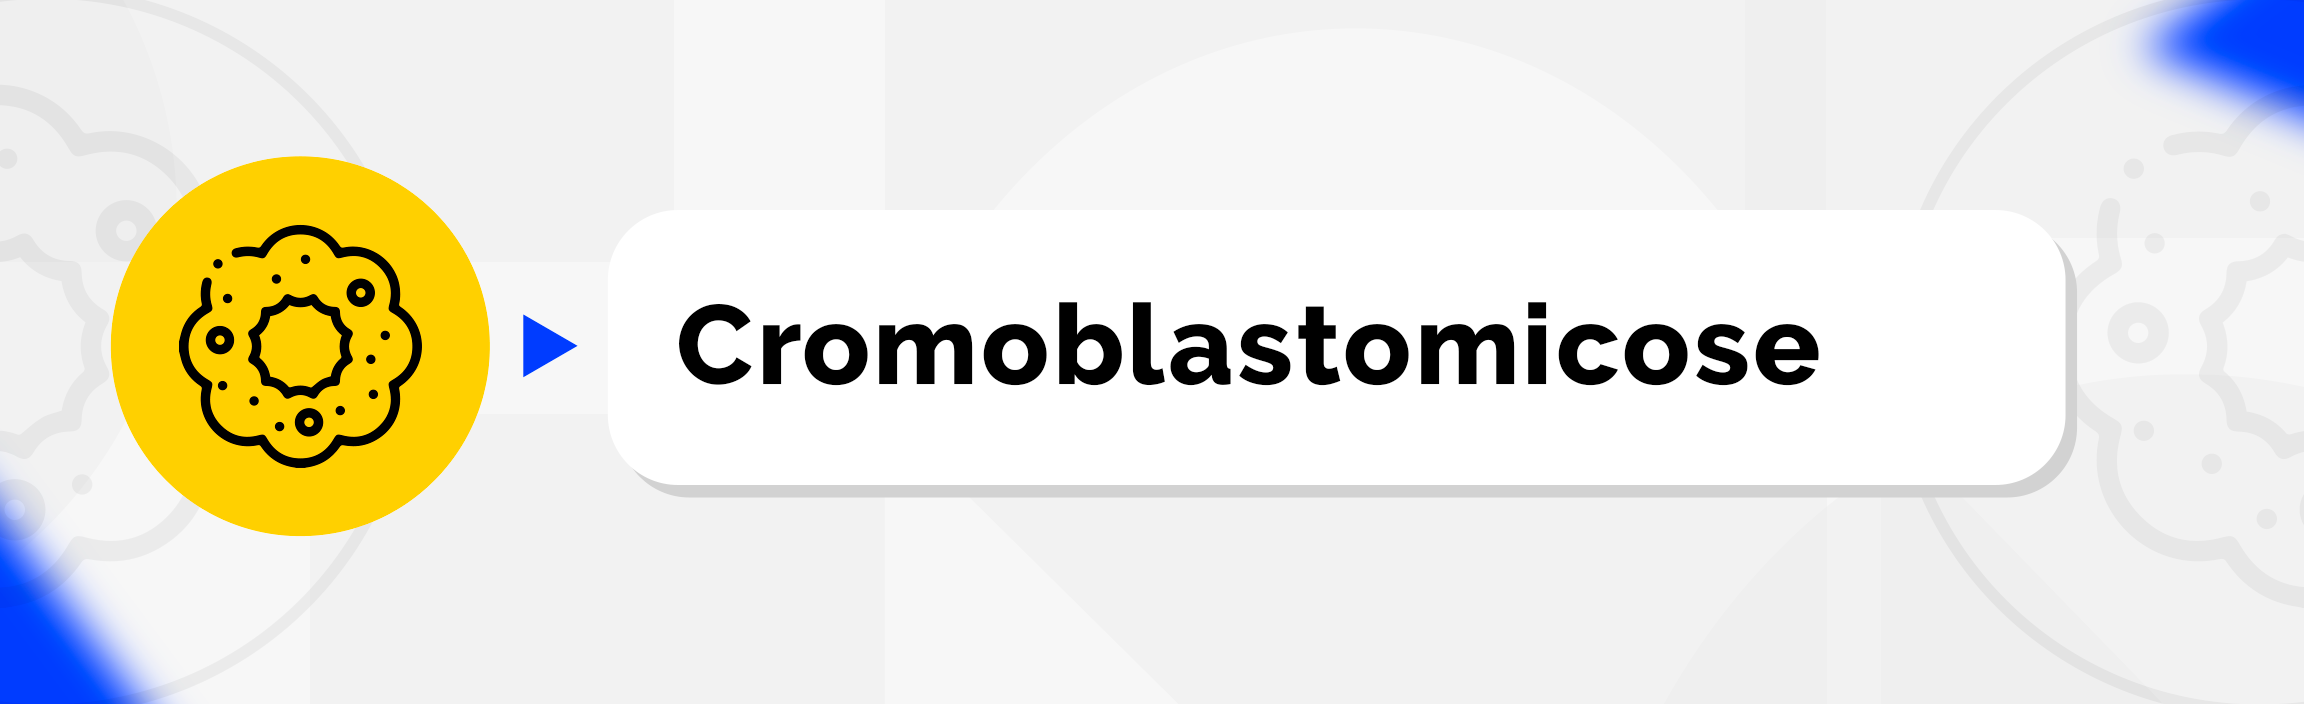 Cromoblastomicose